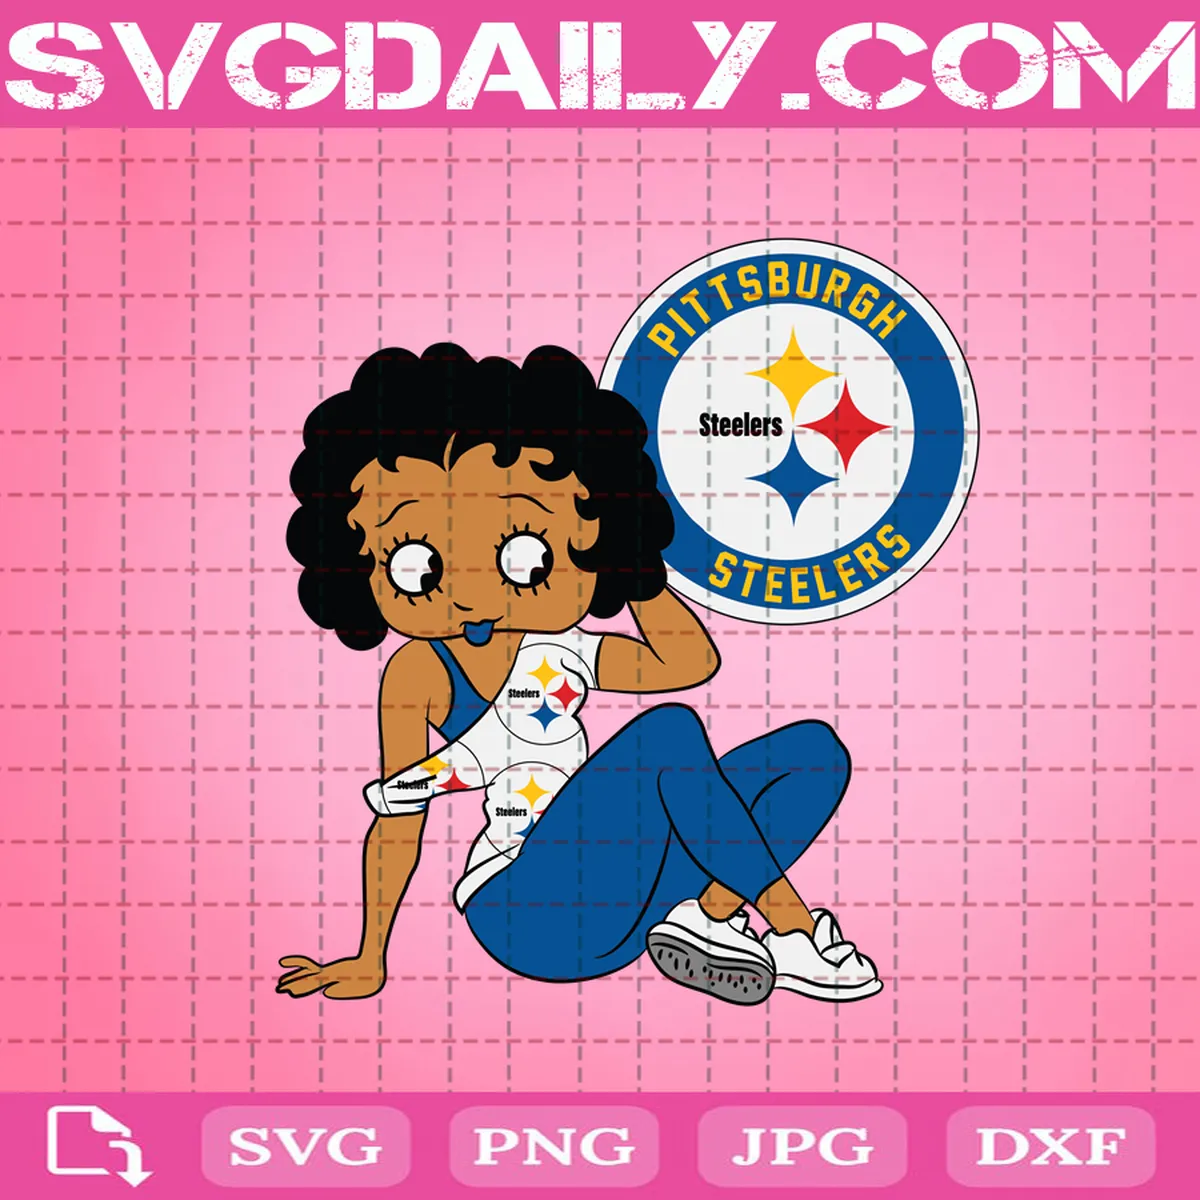 Pittsburgh Steelers Svg, Steelers Svg, Logo Sports Svg, Eps, Png, Dxf, Logo Svg, Football, Sport svg